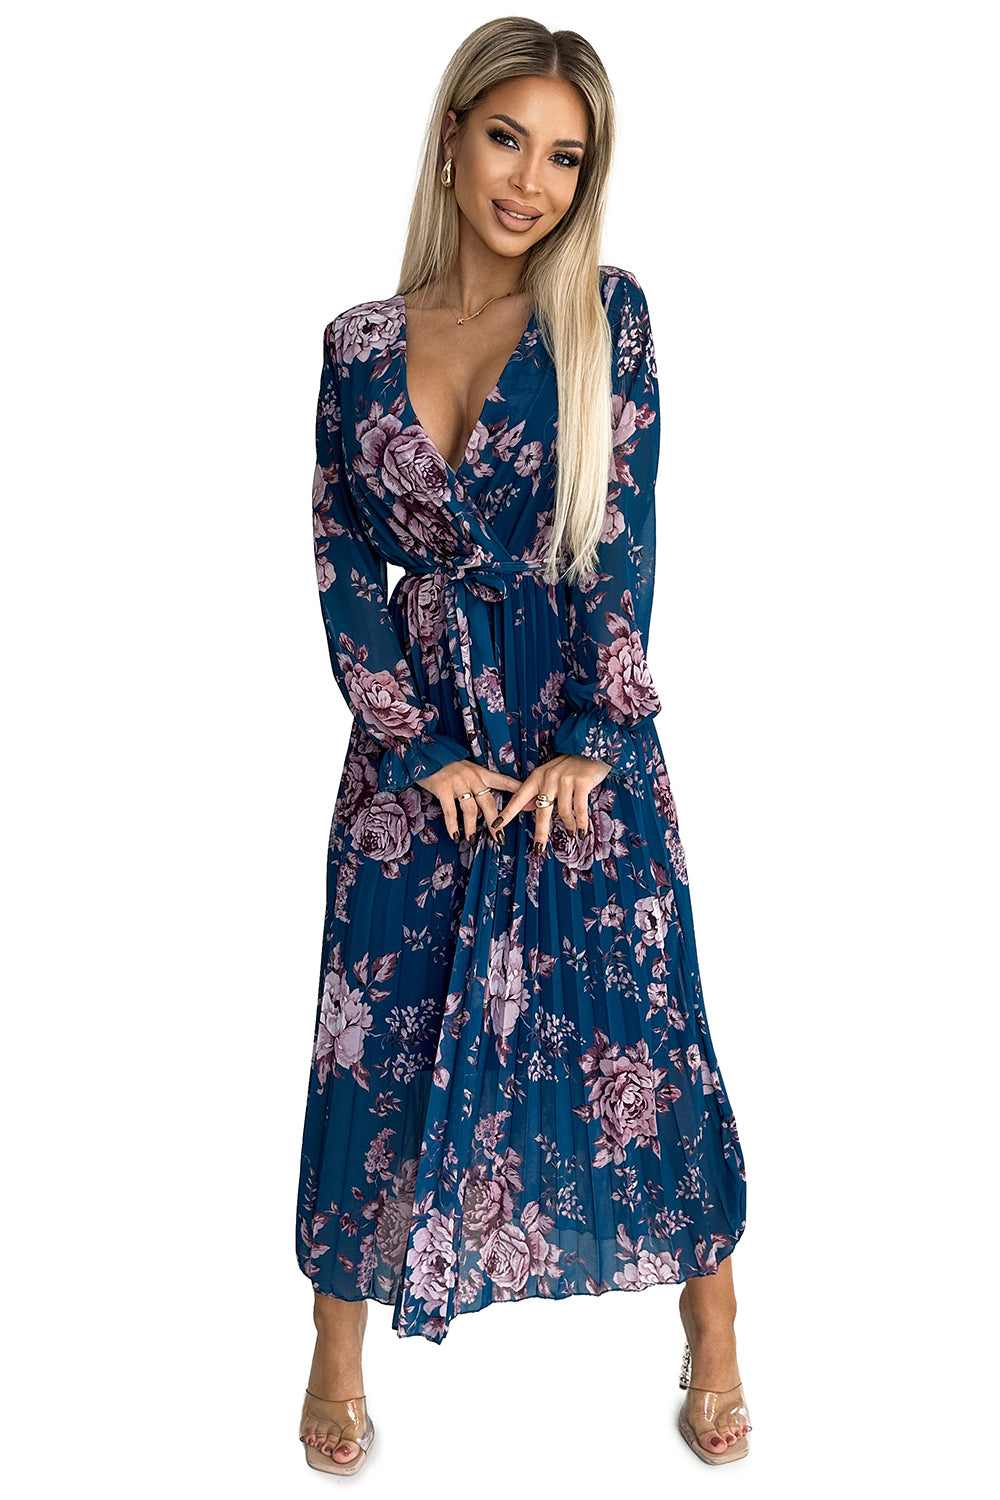 519-3 Hajtogatott sifon hosszú ruha nyakkivágással; hosszú ujjú és öv - Kék virággal